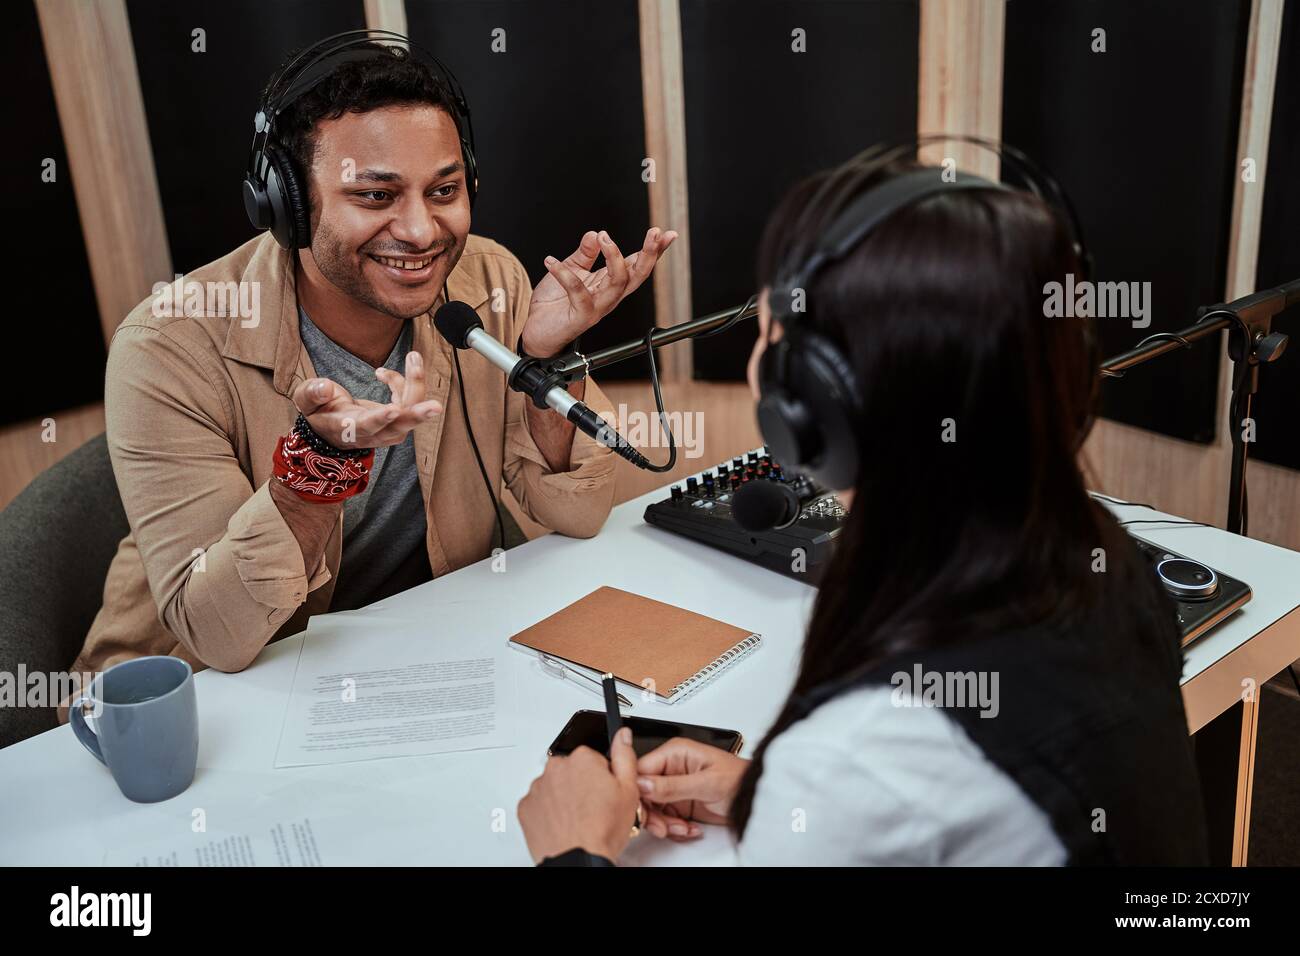 Portait von glücklichen männlichen Radiomoderator lächelnd, im Gespräch mit weiblichen Gast während der Moderation einer Live-Show im Studio Stockfoto